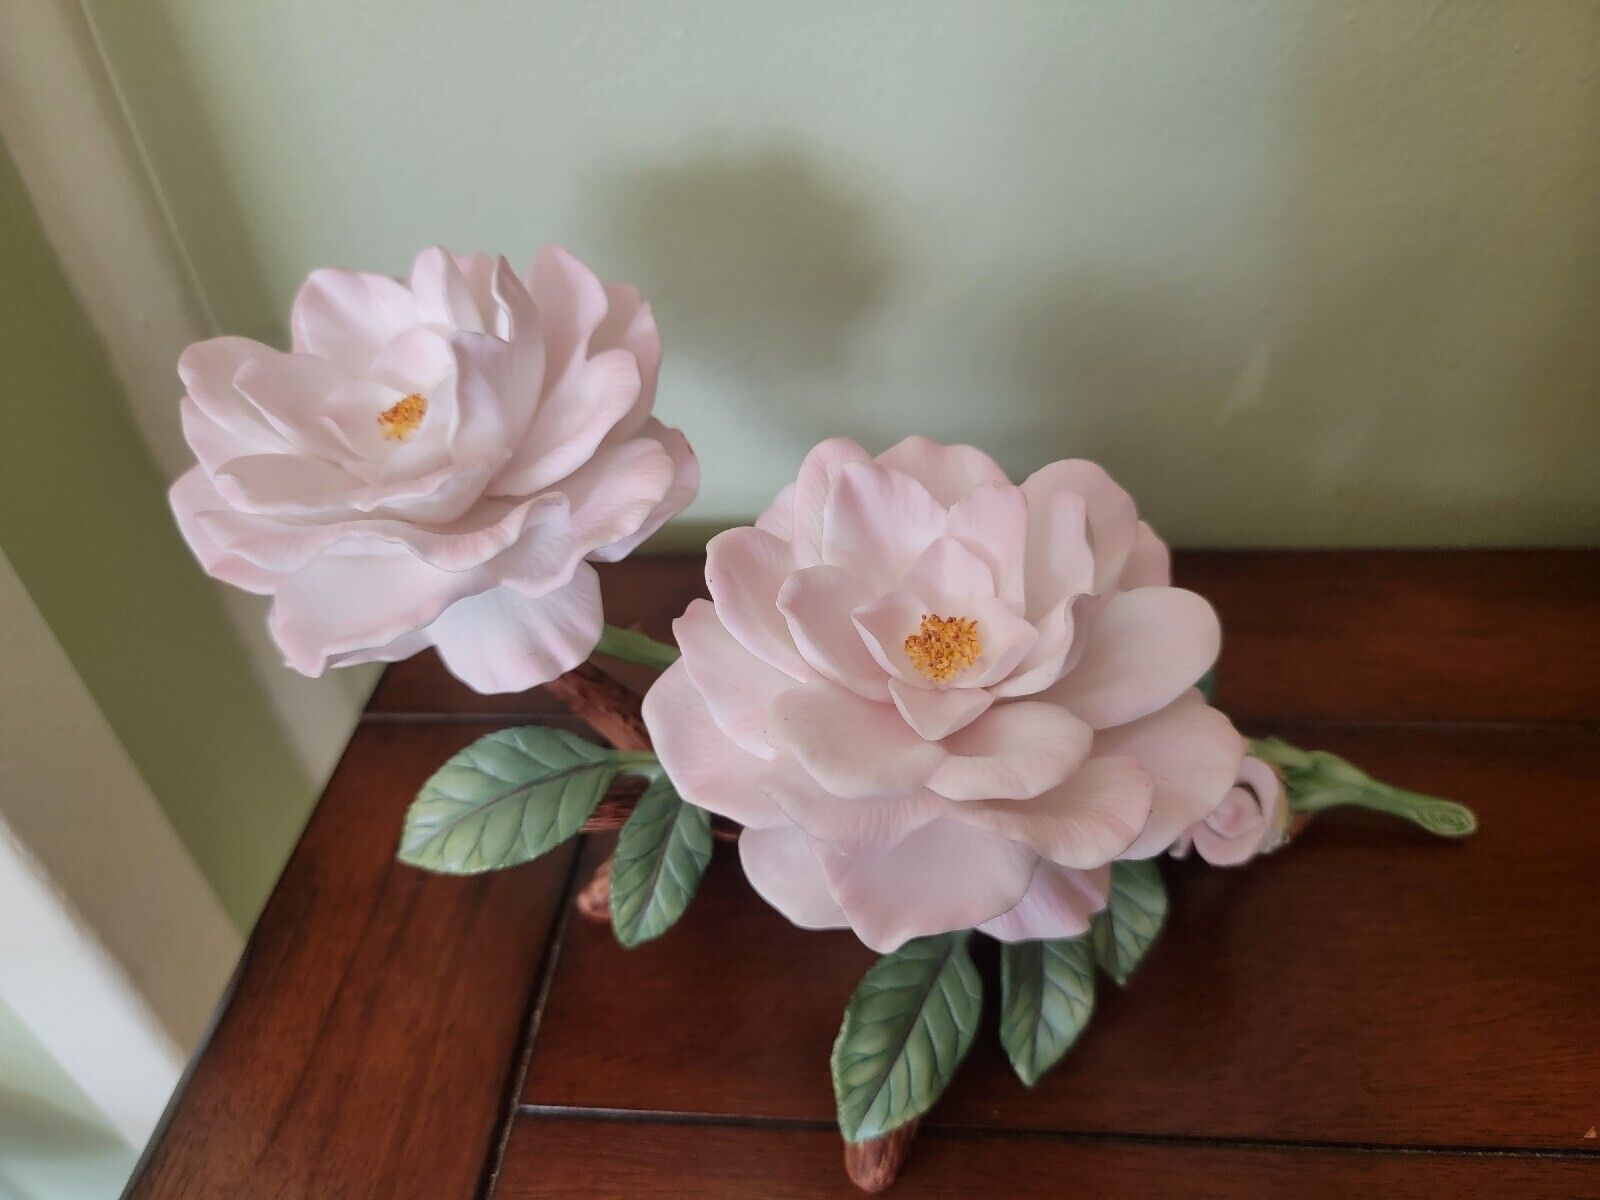 Lenox Garden porcelain flower figurine, Celestial Rose 